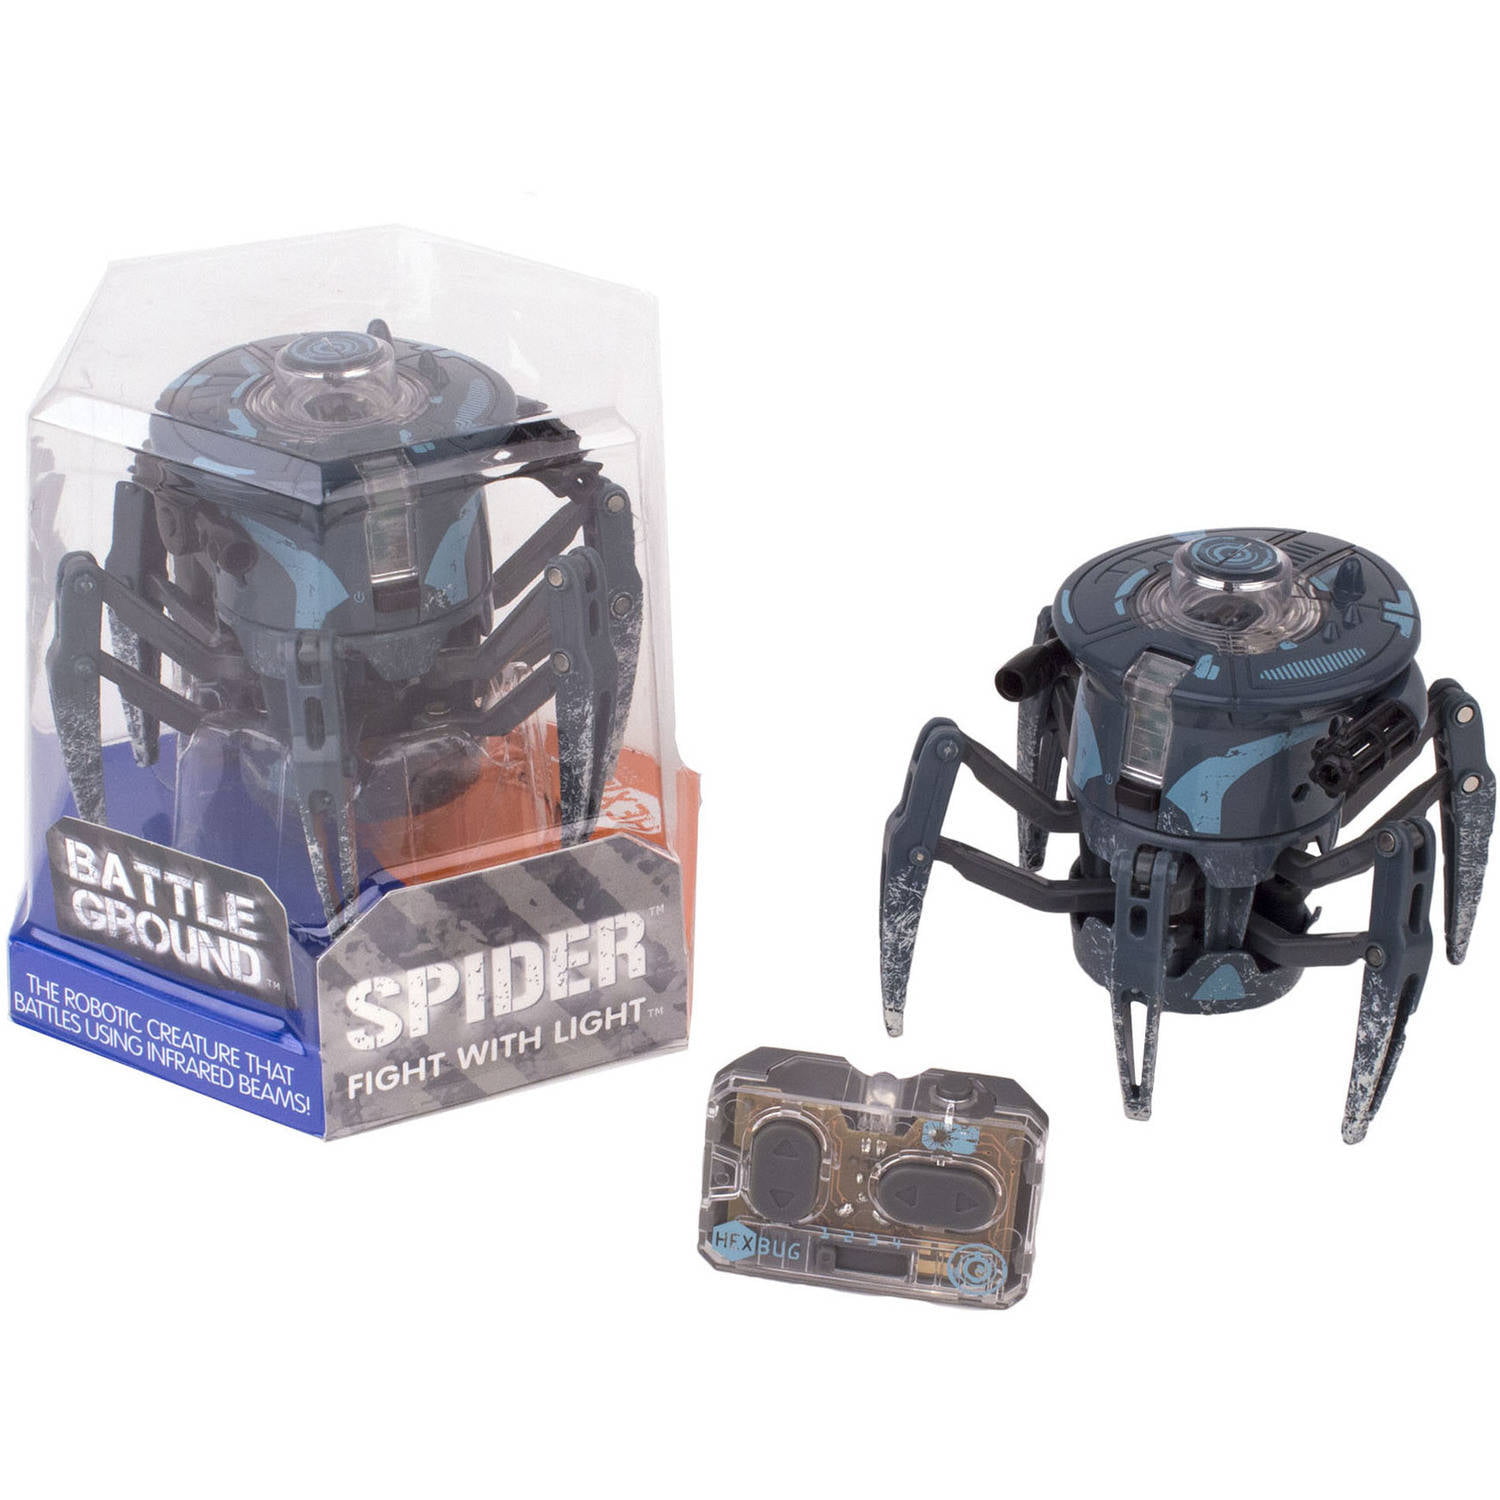 Камера спайдер 2.0. Микроробот Спайдер. Hexbug Battle Spider. Робот Hexbug набор Battle Spider 2. Микроробот "боевой ринг рейсер".